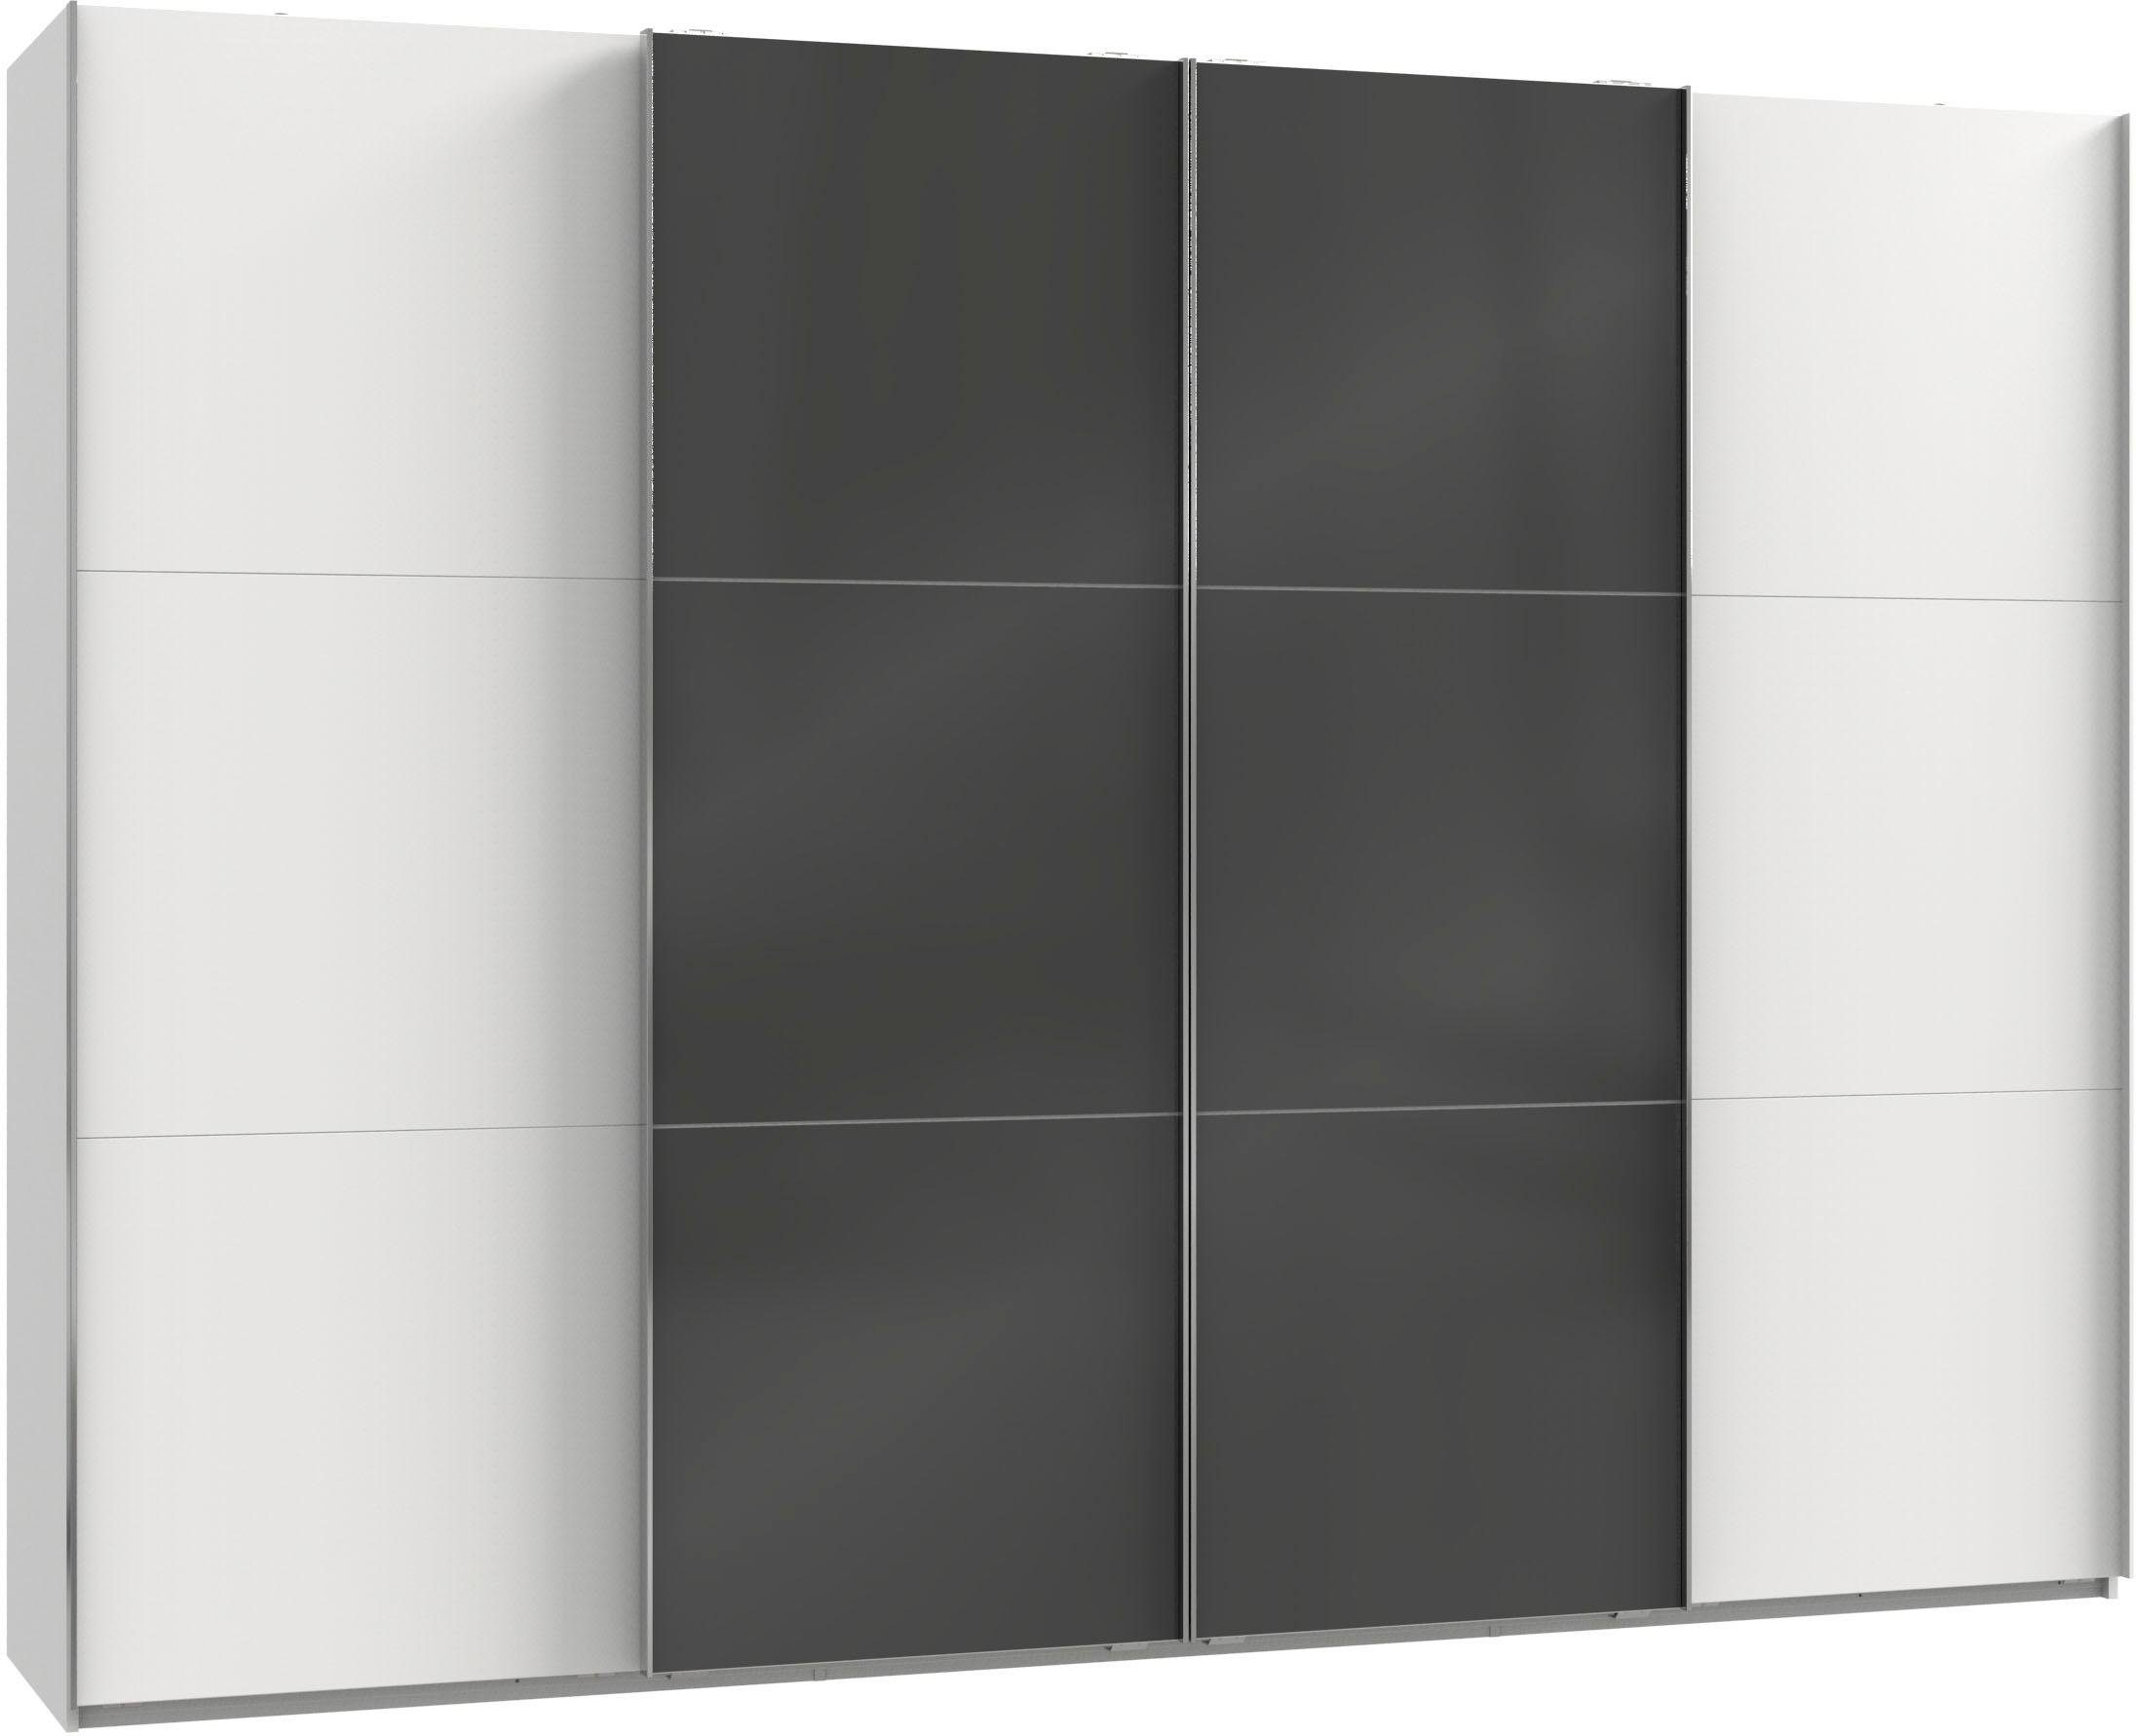 Level Glastüren mit To Synchronöffnung Schwebetürenschrank weiß/Grauglas Fresh Go und